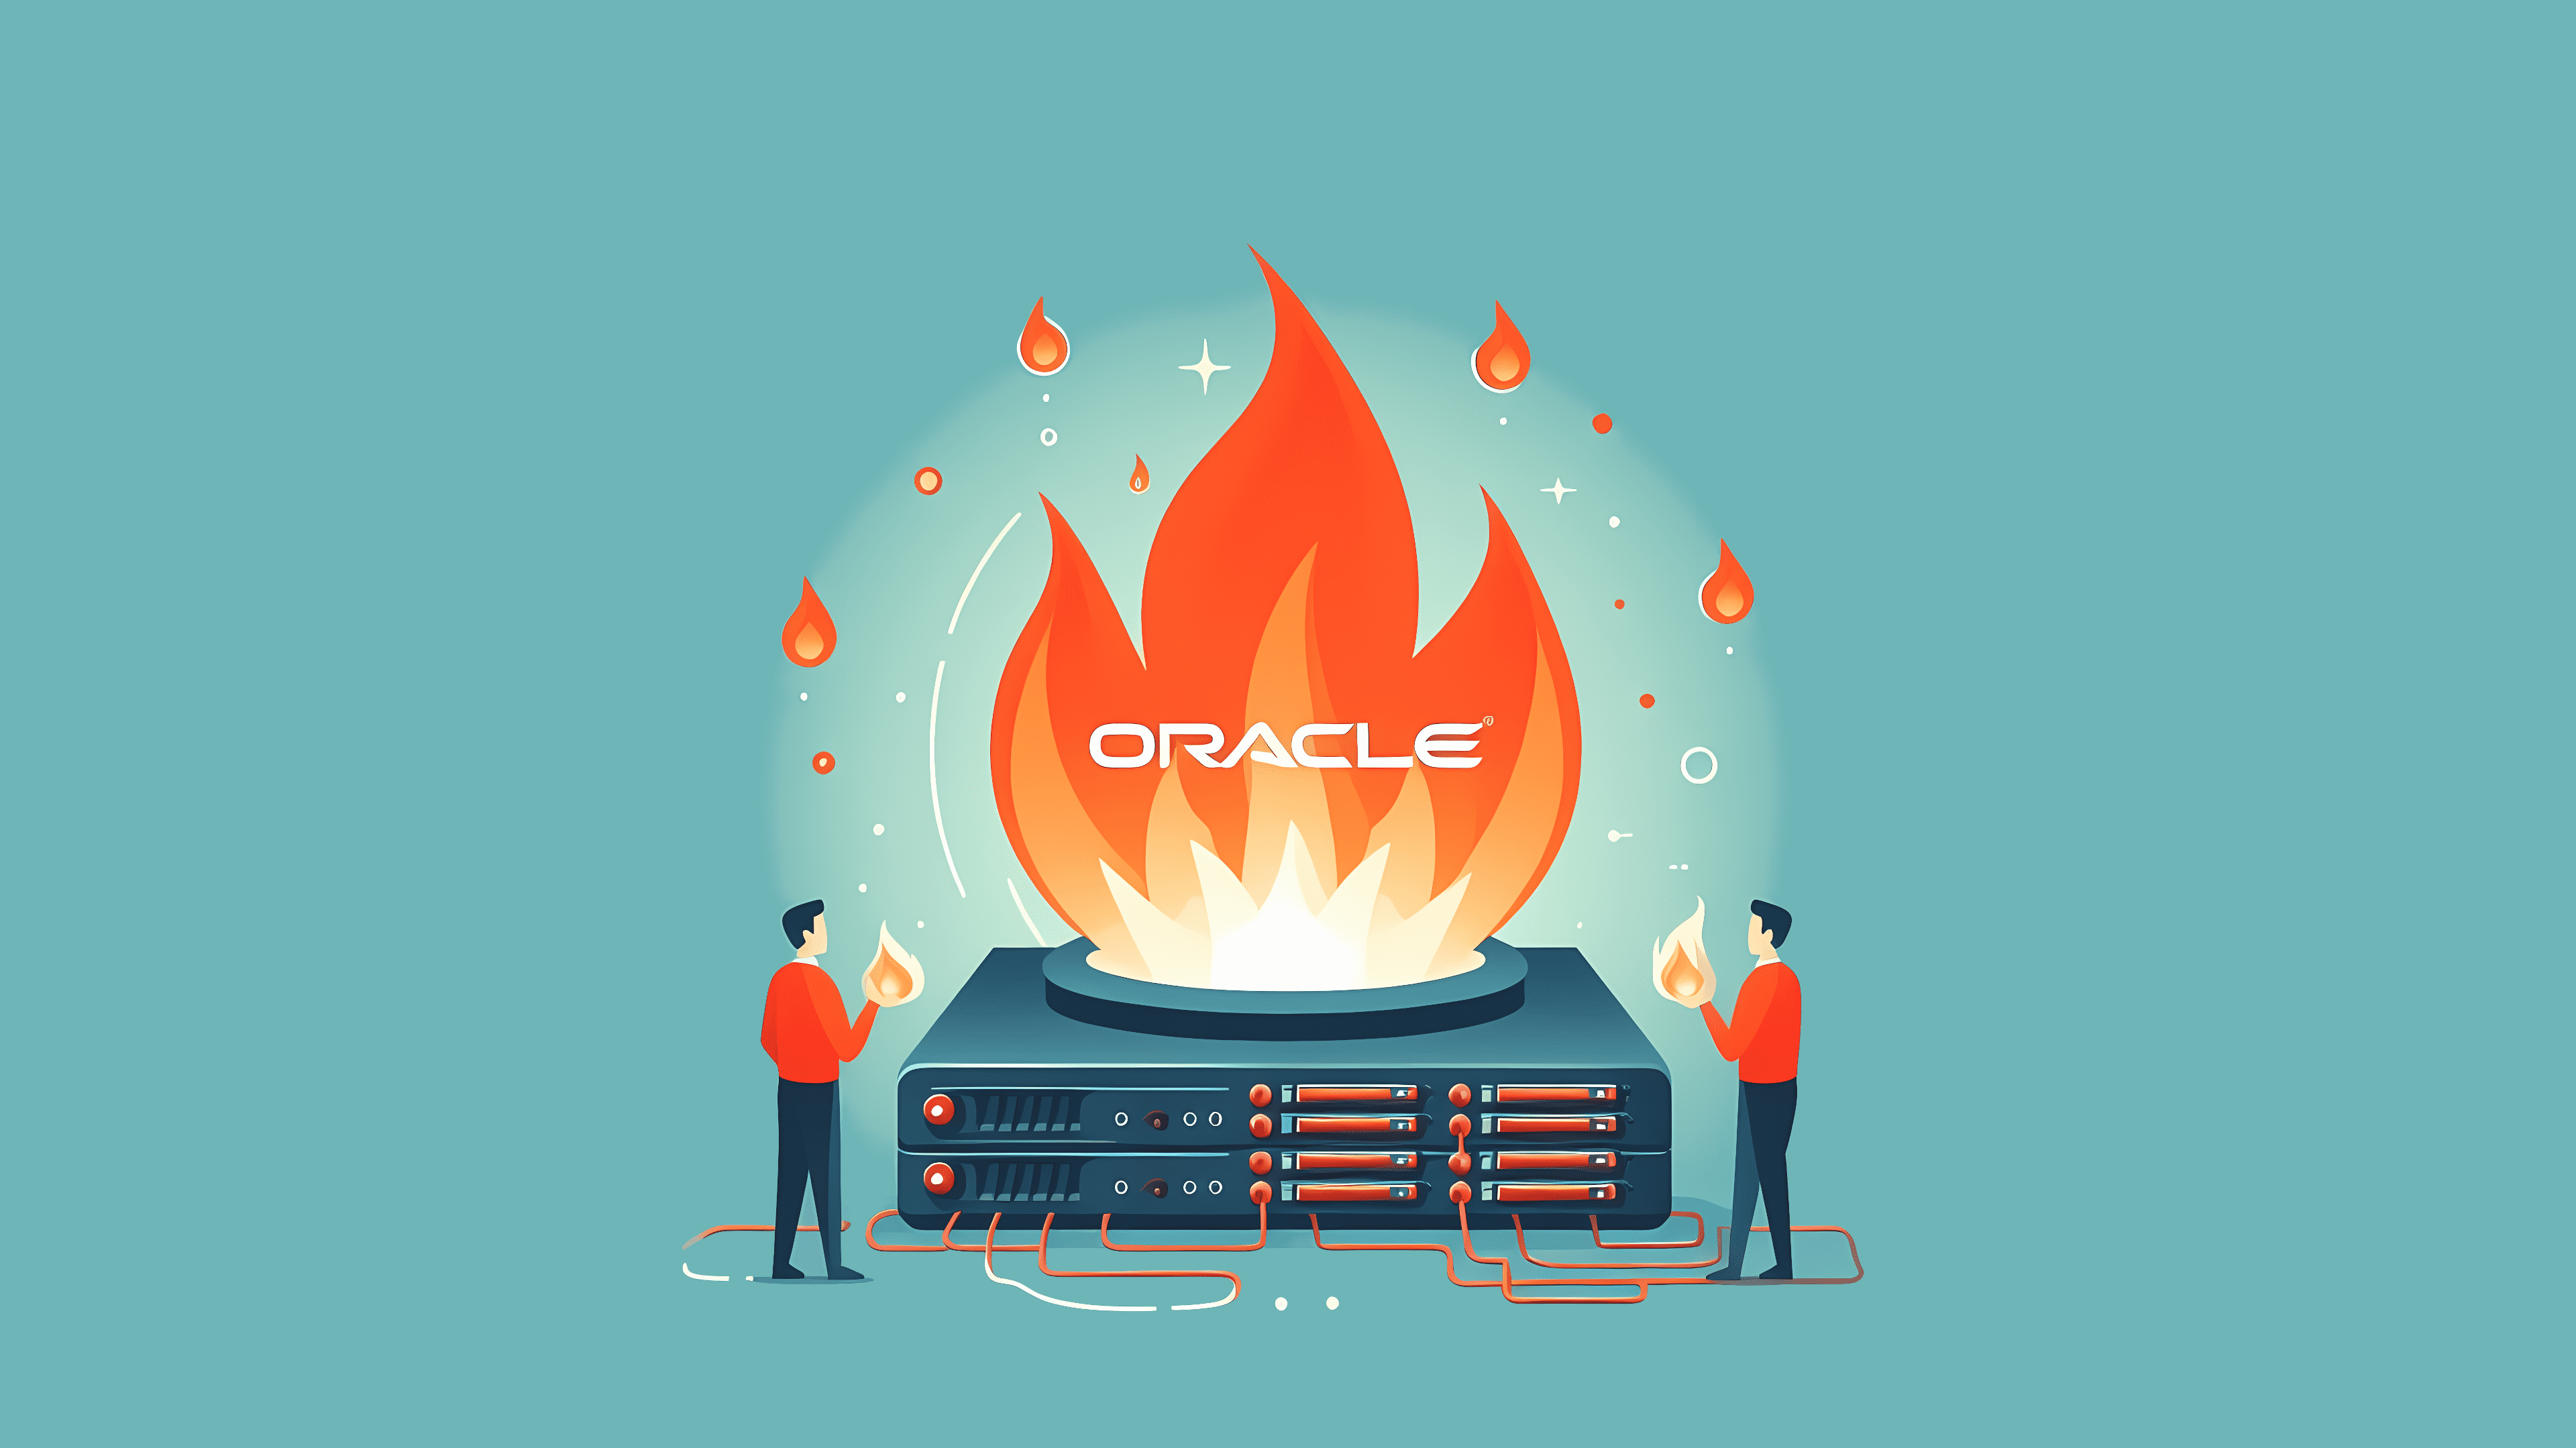 Stilisiertes Bild: Oracle-Logo auf Appliances, mit Flammen